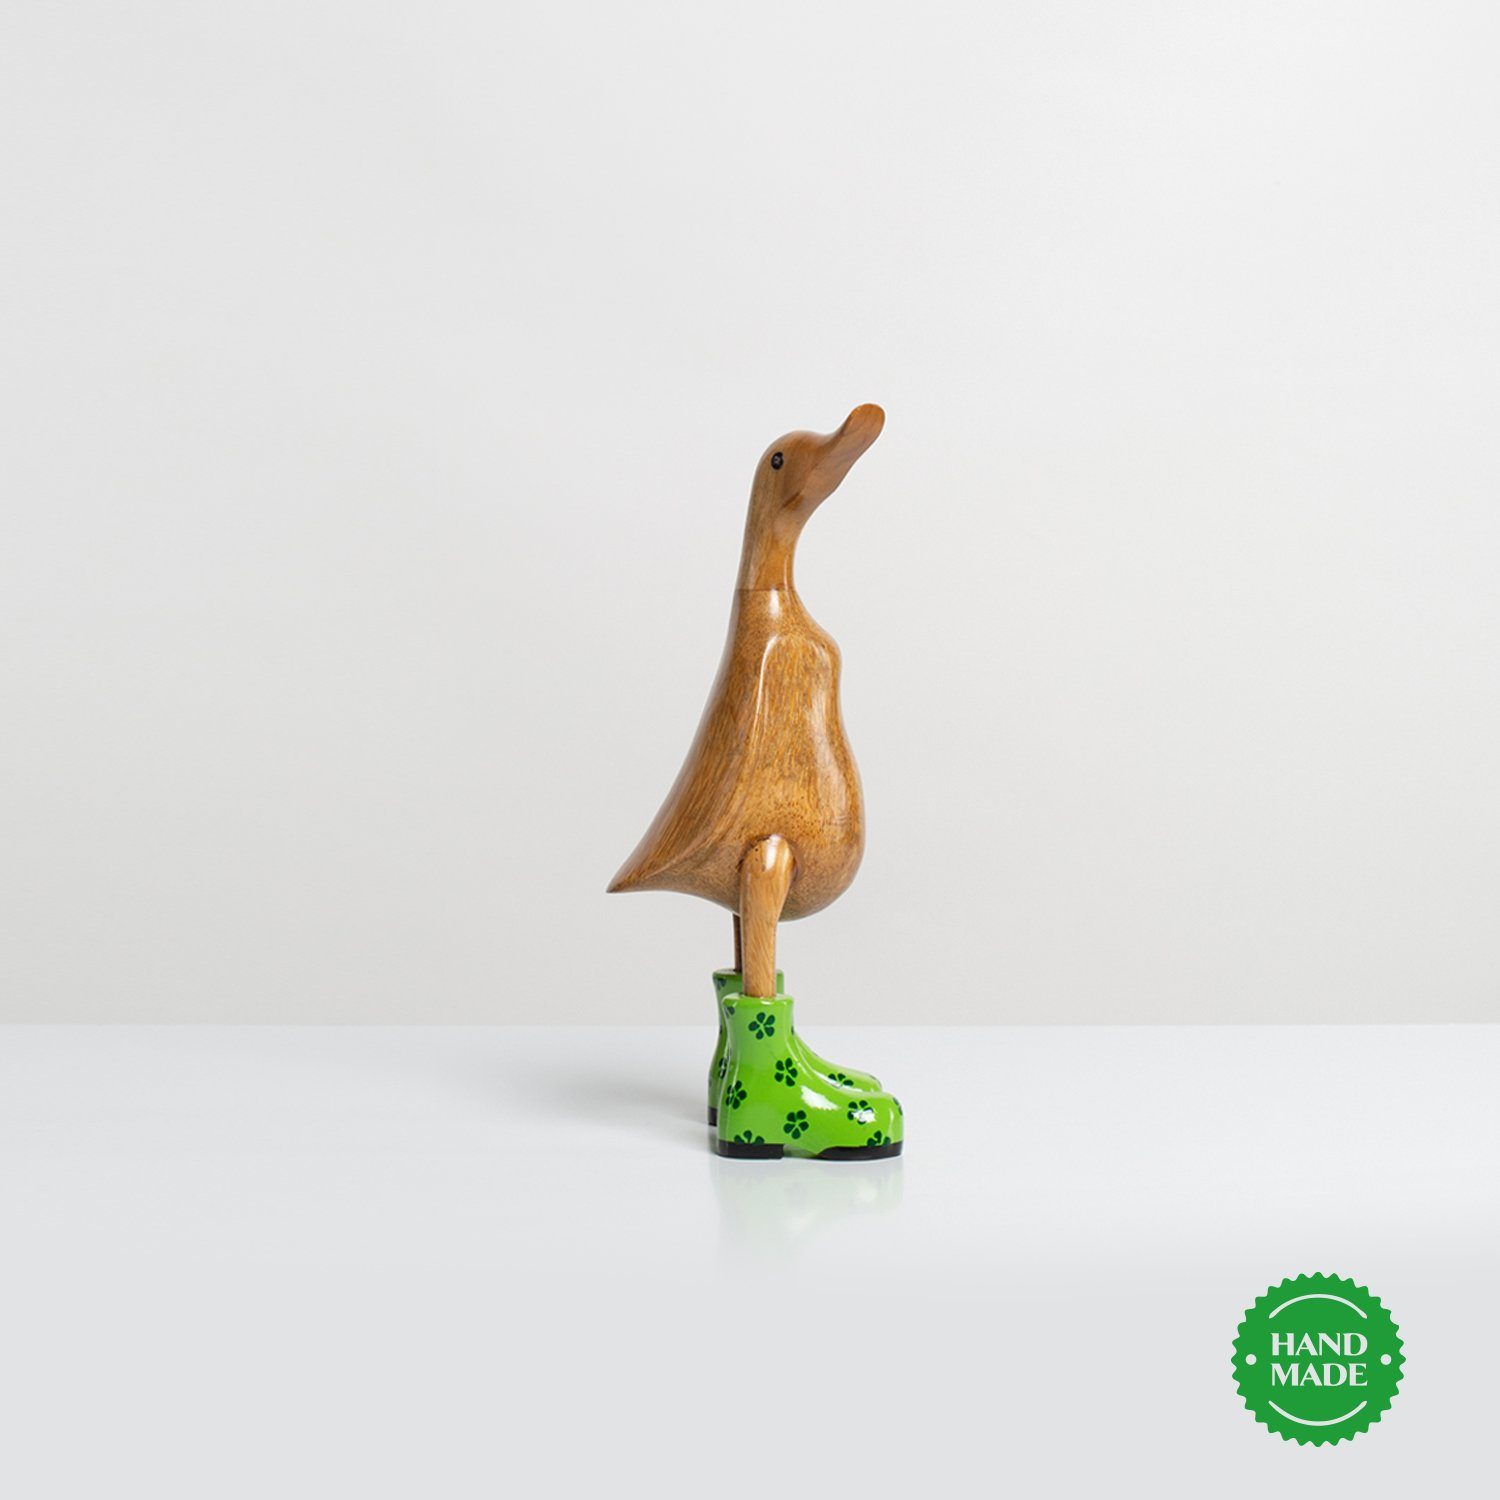 Holz 3 Handgefertigte Ente Stiefel Holzfigur aus Dekofigur Dekoration Set), grün_geblümt Geschenk (3-er - Rikmani Holzarten